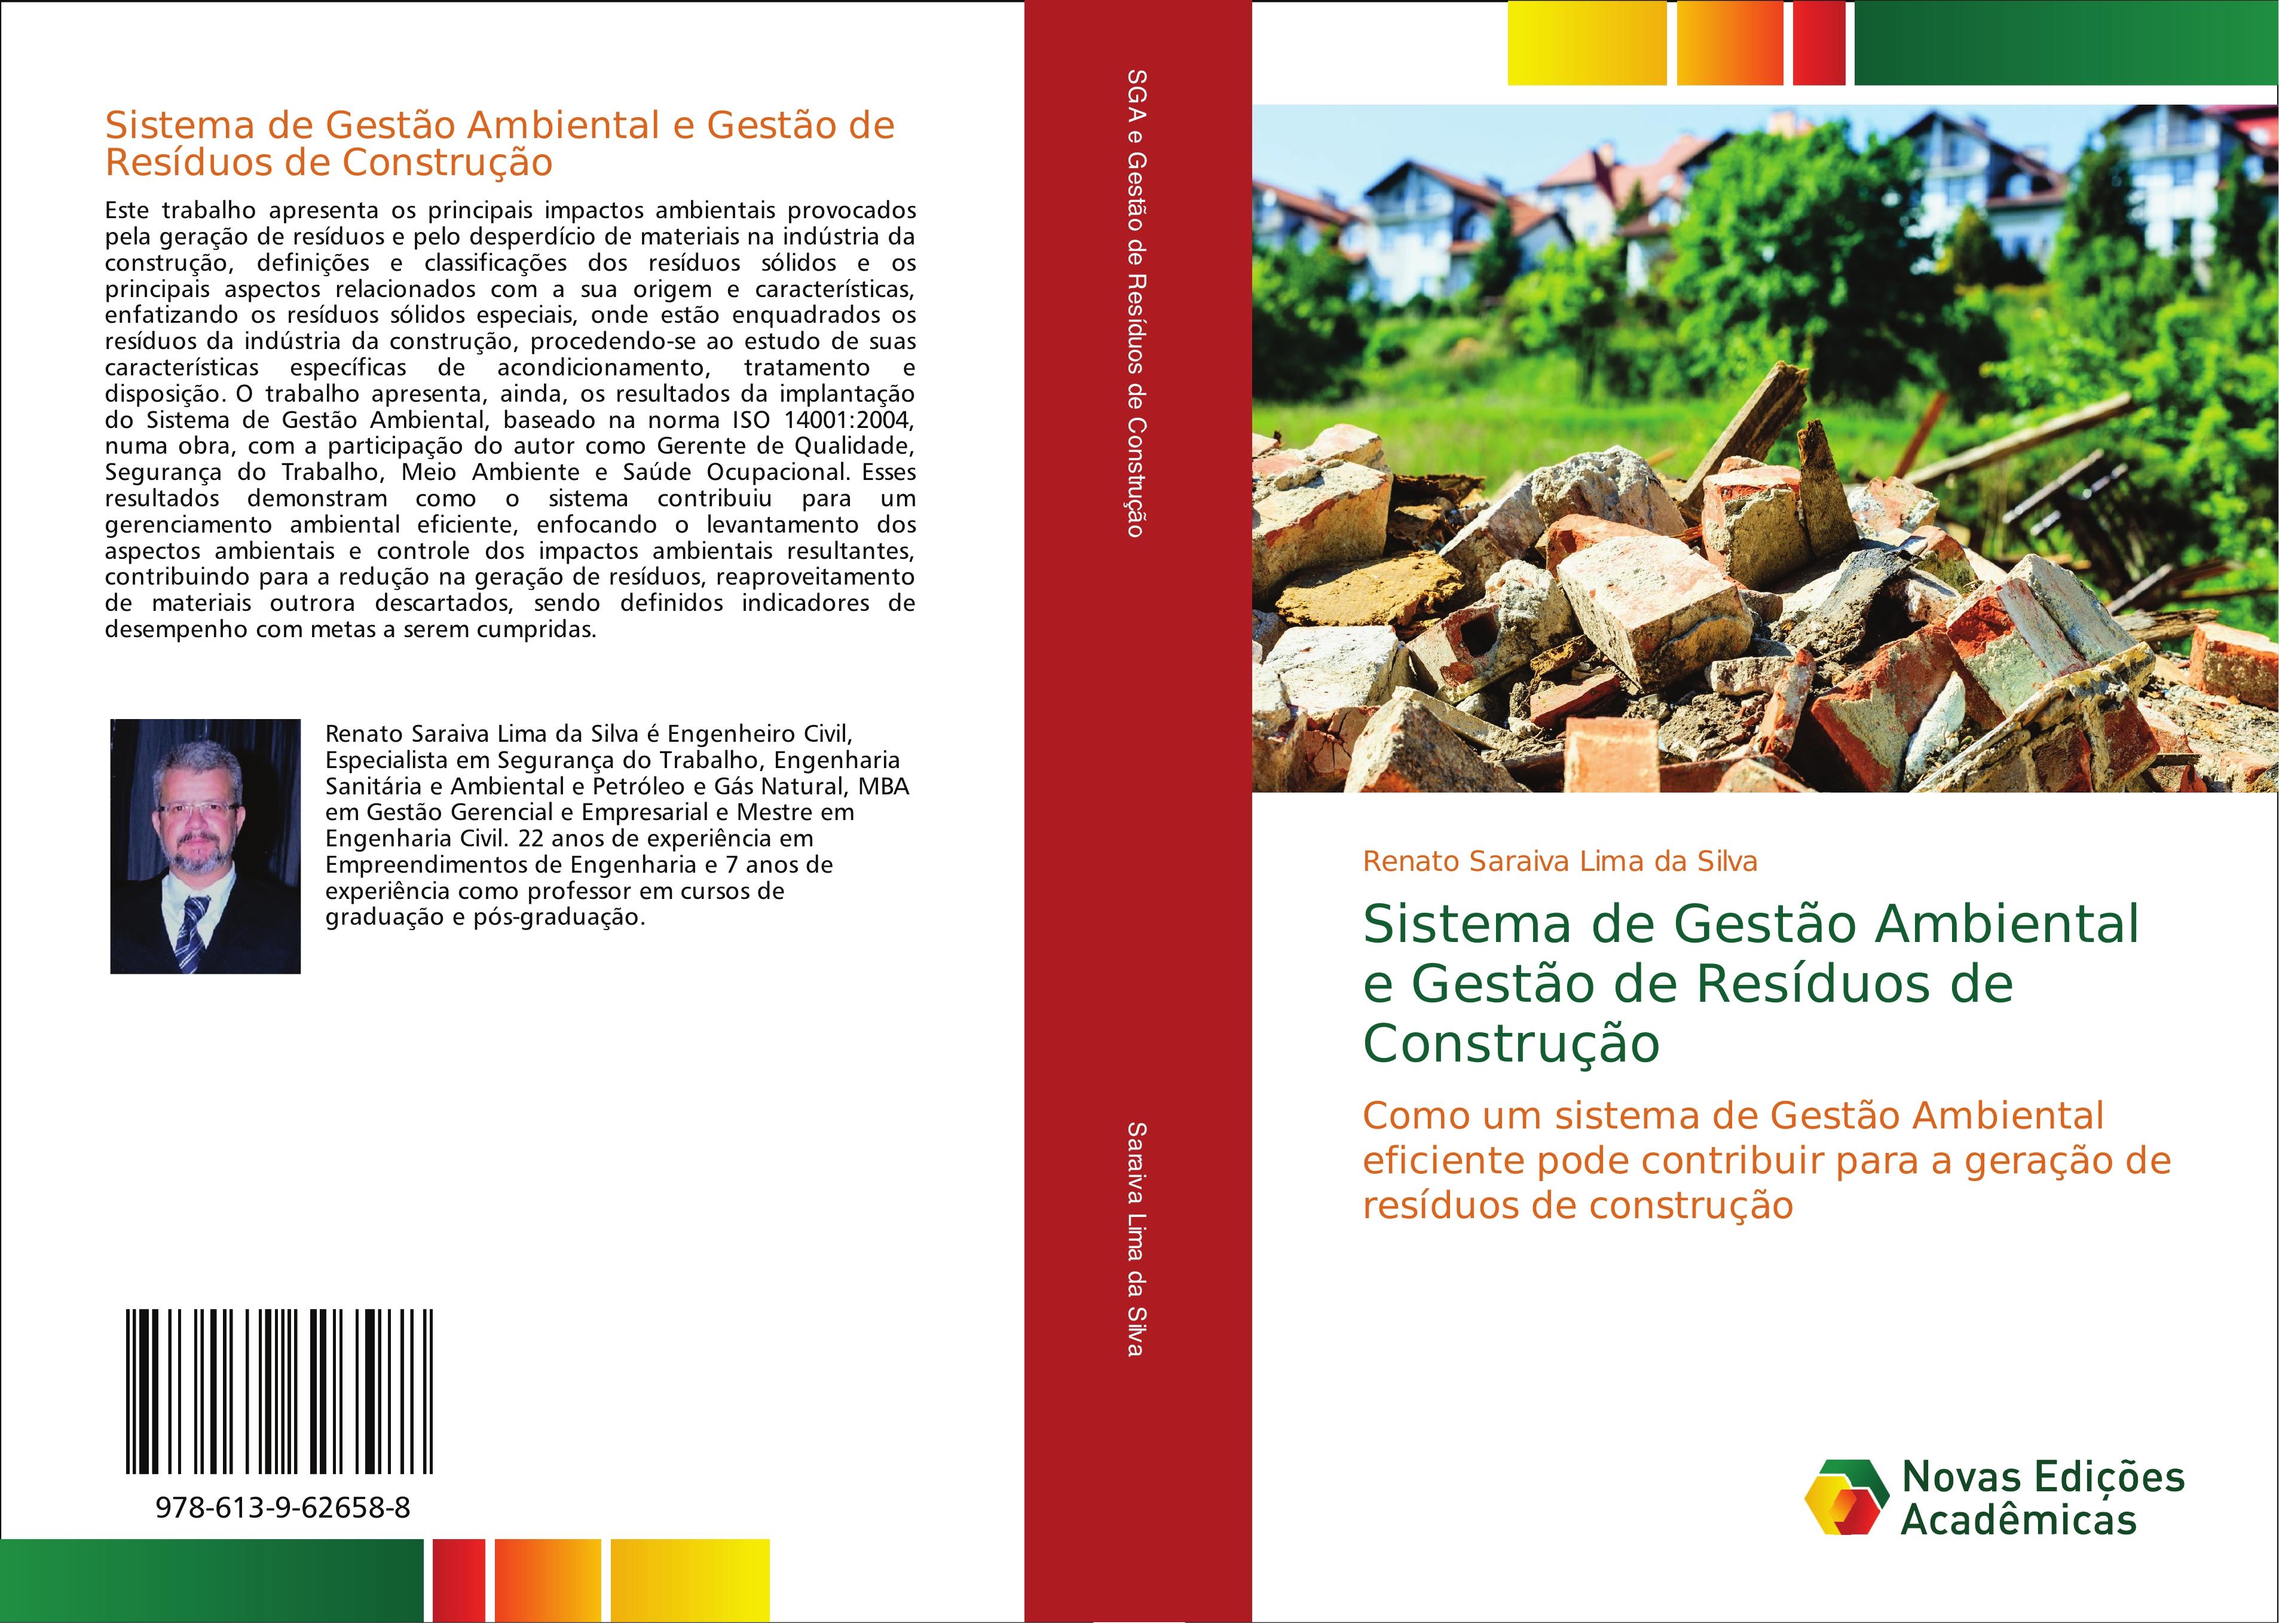 Sistema de Gestão Ambiental e Gestão de Resíduos de Construção - Renato Saraiva Lima da Silva